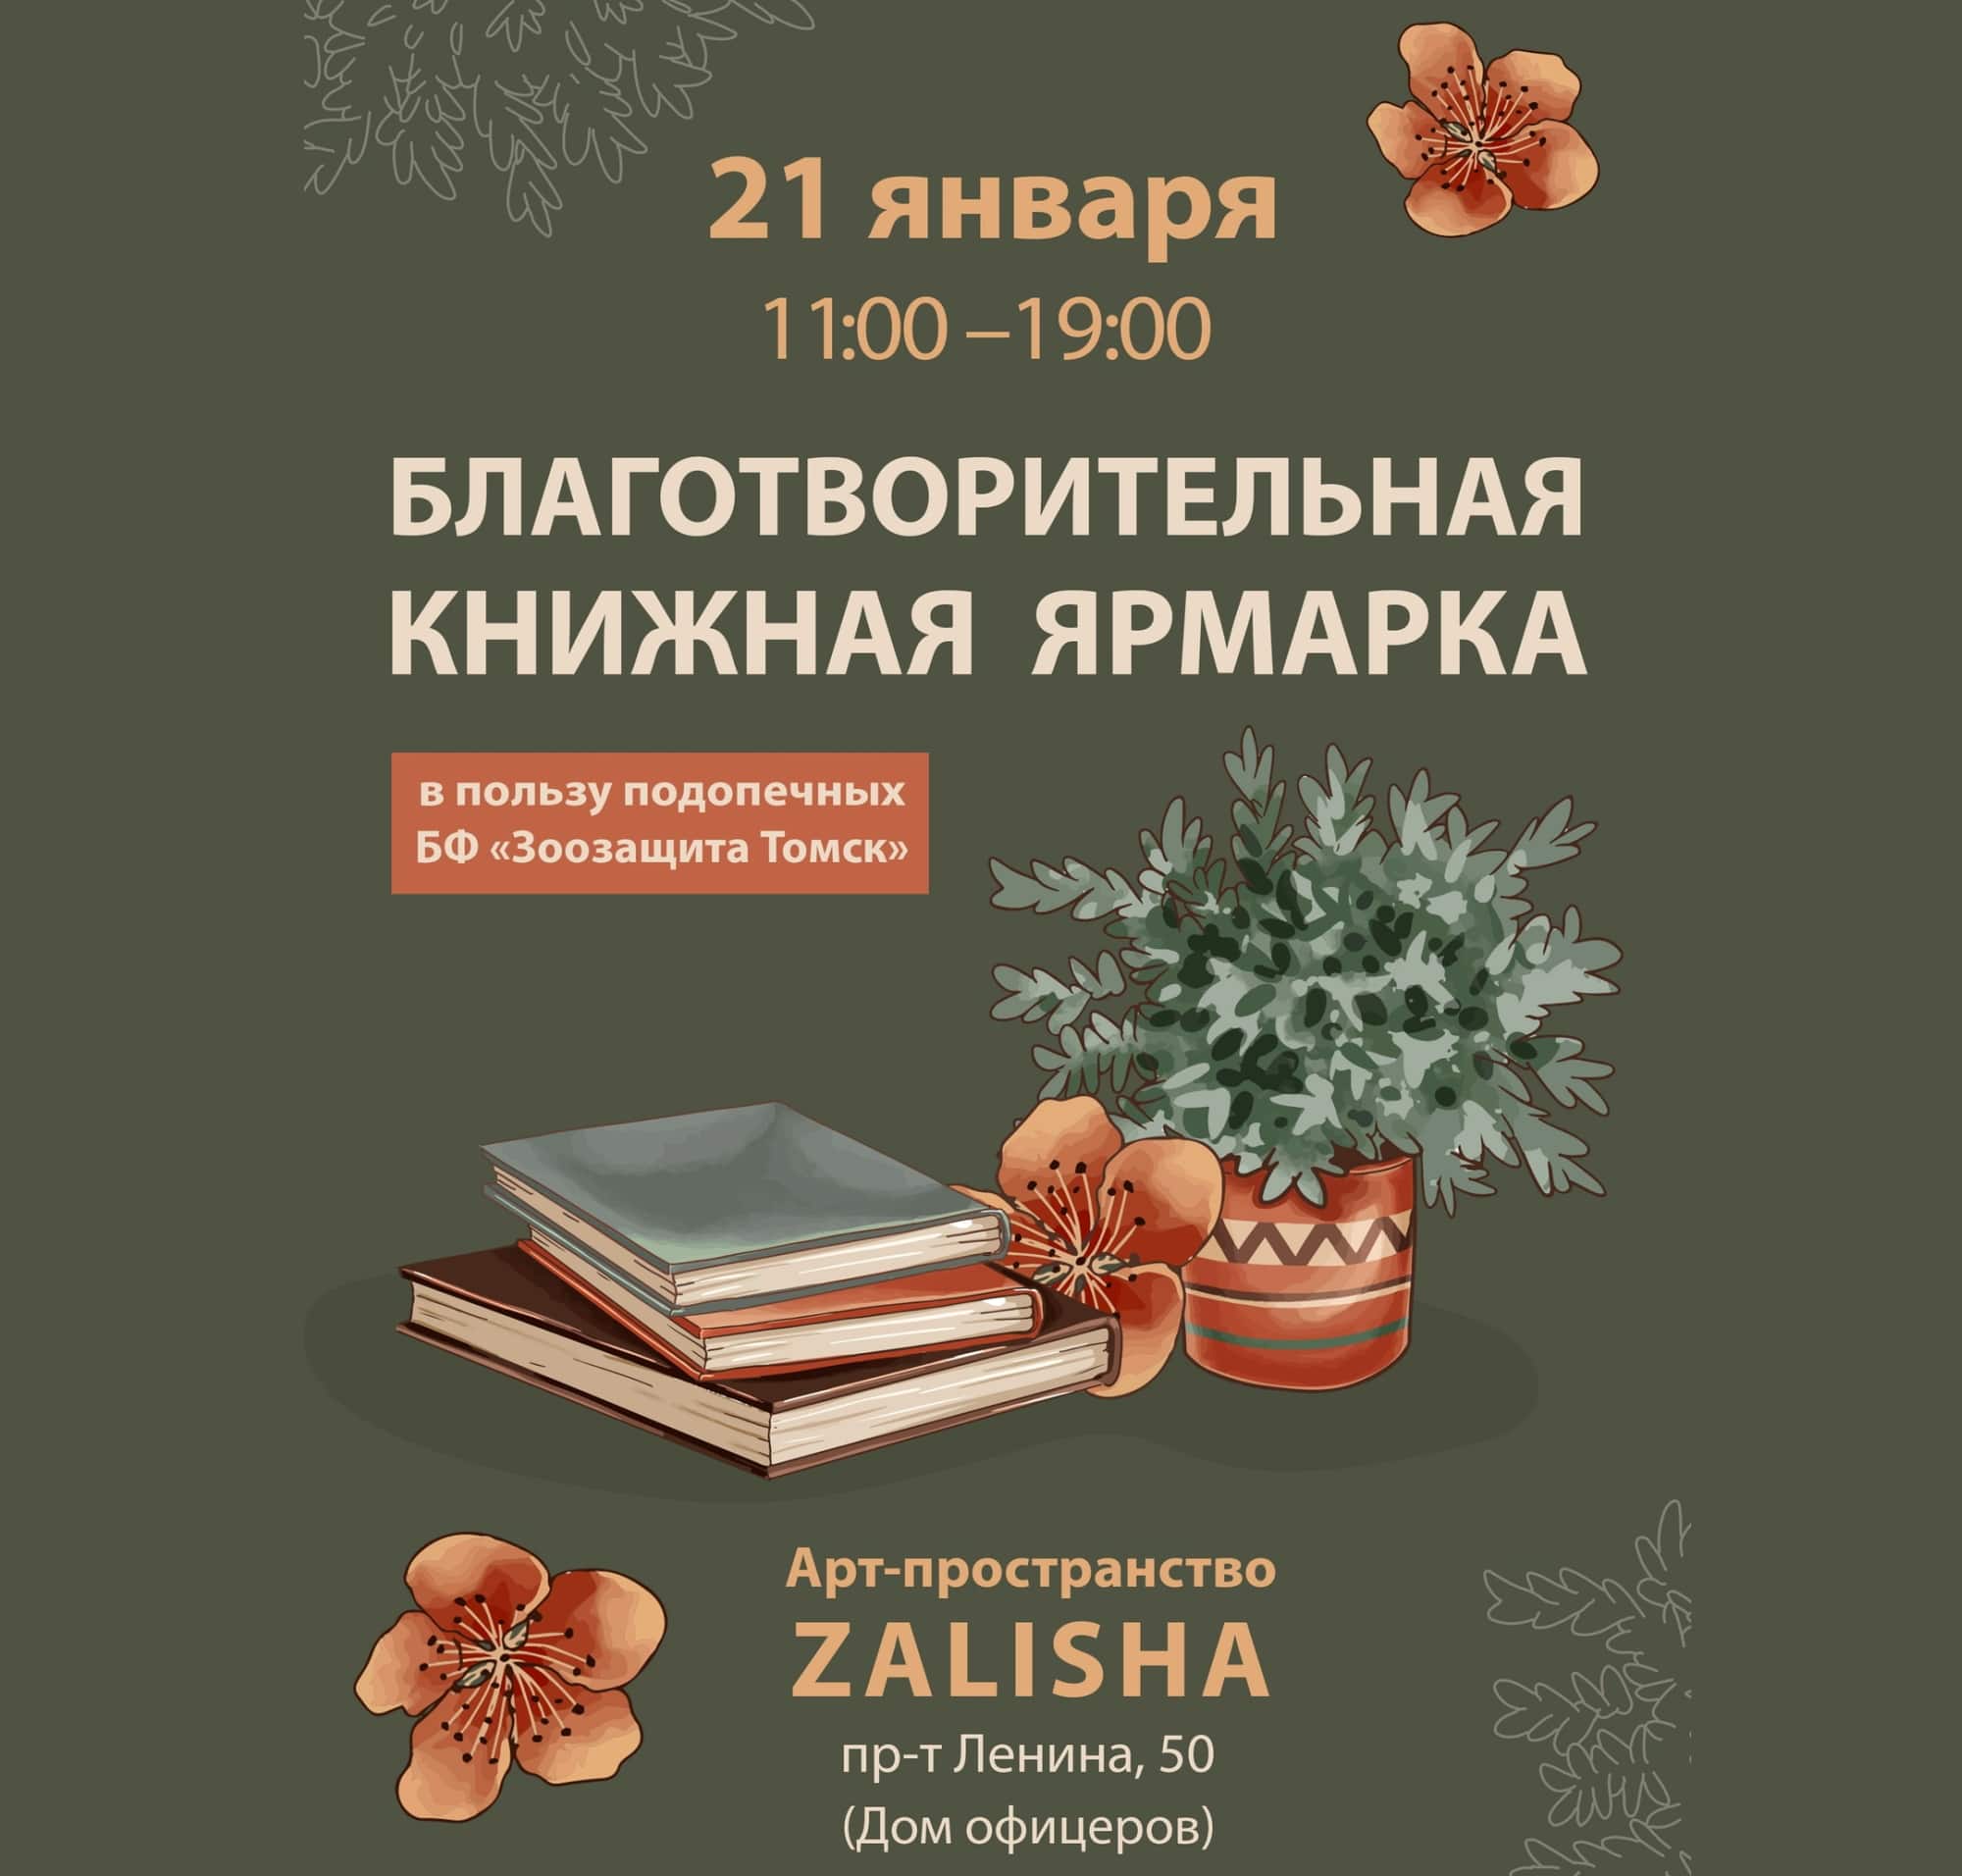 Благотворительность, Томские новости, арт-пространство залиша куда сходить купить книги недорого благотворительность в Томске Томичей приглашают на благотворительную книжную ярмарку